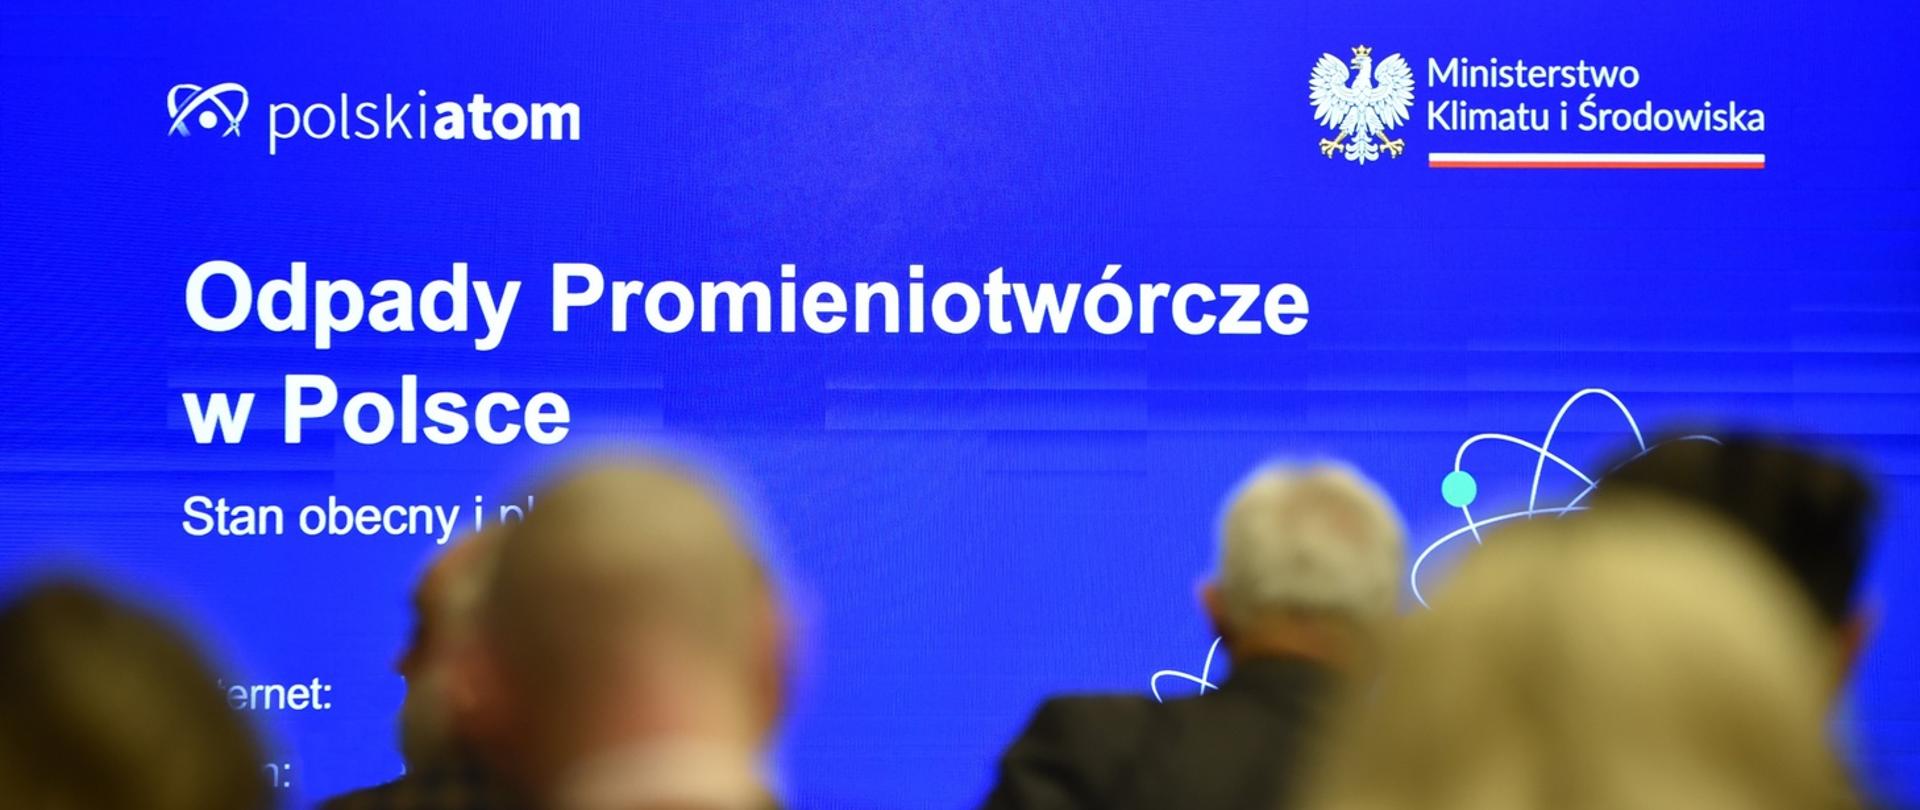 W Polsce powstanie nowe składowisko odpadów promieniotwórczych